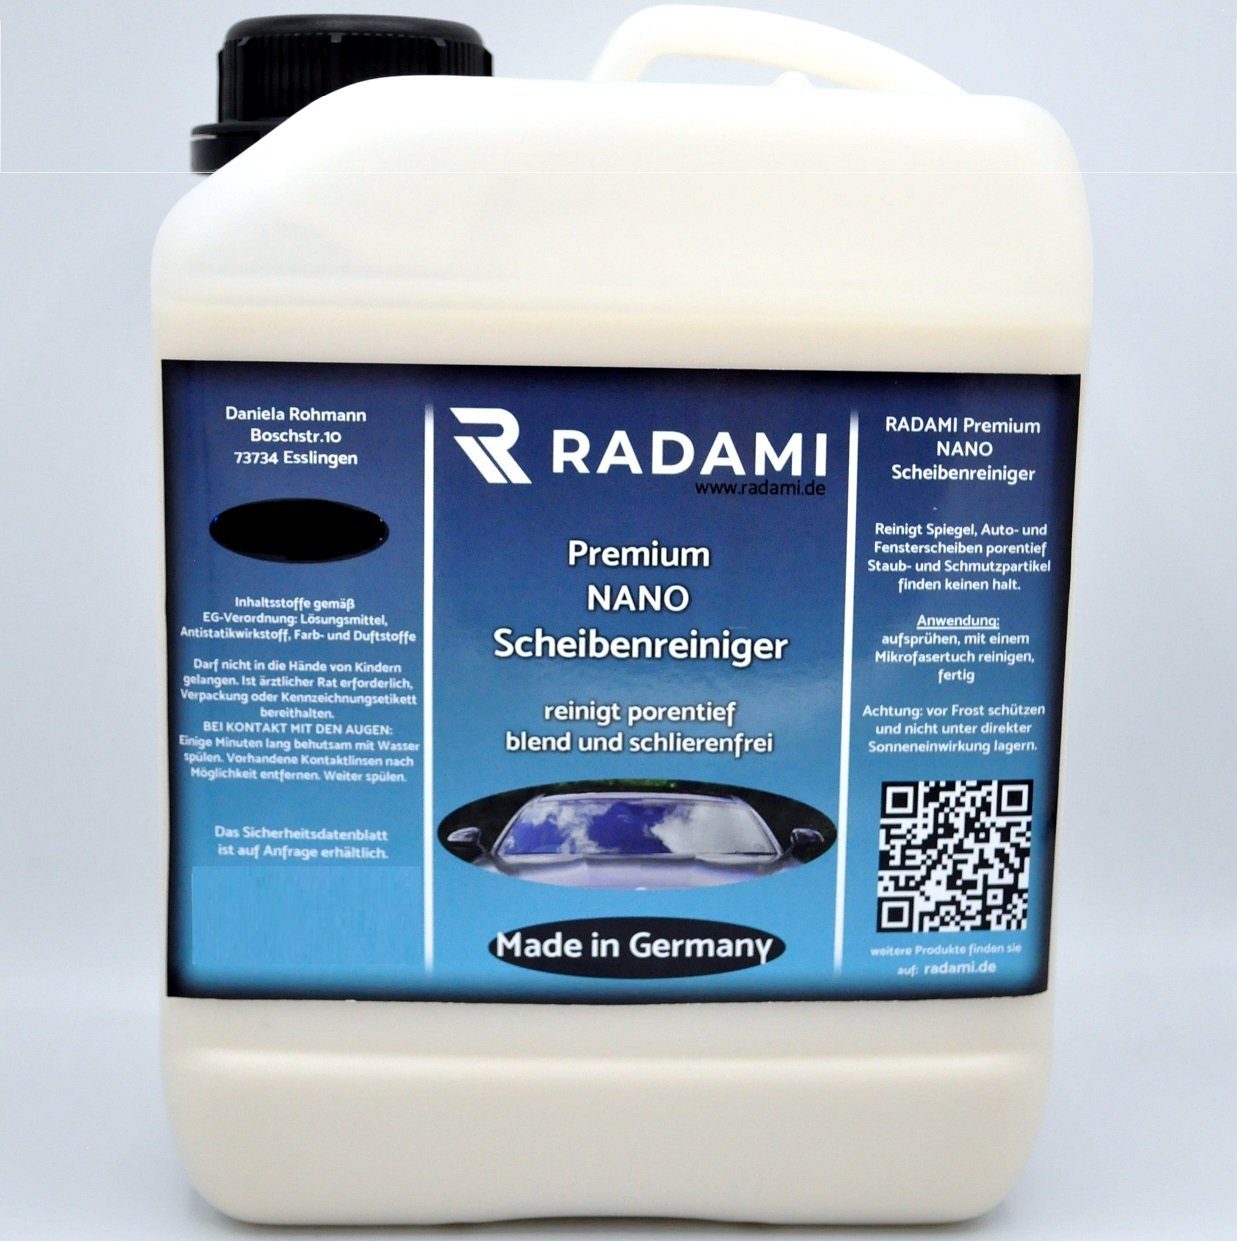 Radami Gaskocher Premium Nano Scheibenreiniger Glasreiniger 2500ml